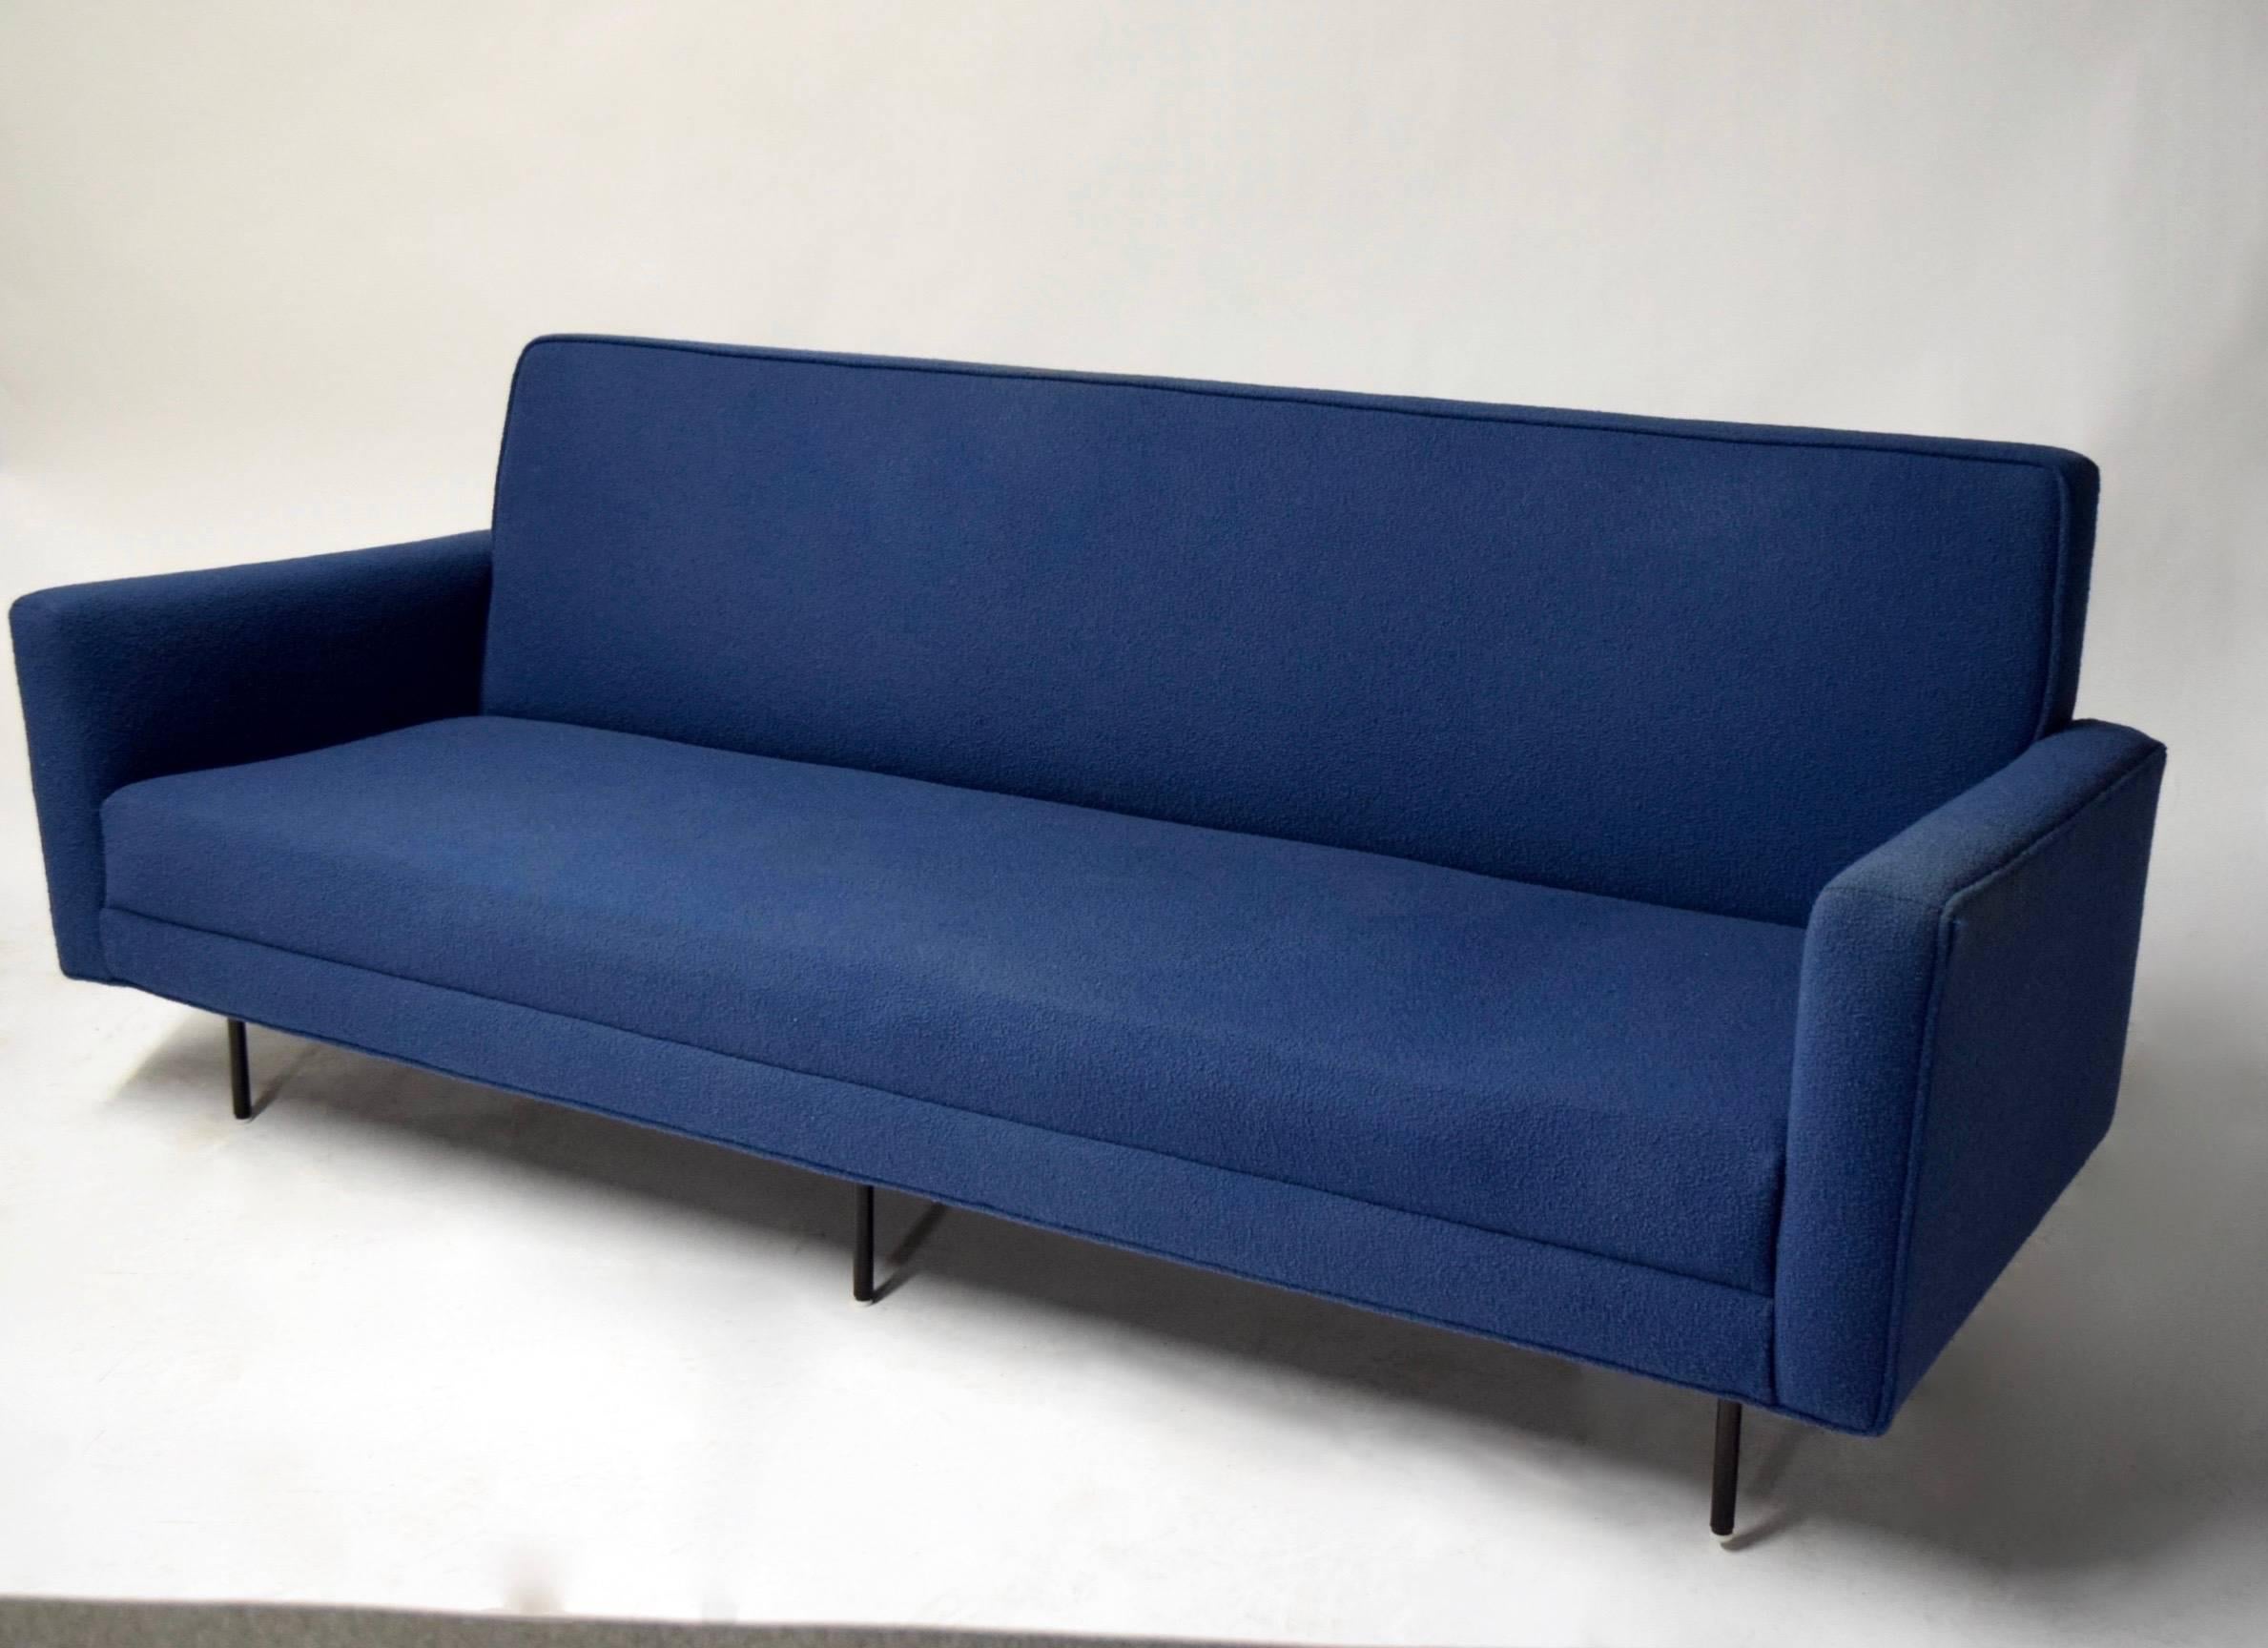 Sofa von Florence Knoll, gepolstert mit Knoll-Stoff, um 1950 (Moderne der Mitte des Jahrhunderts)